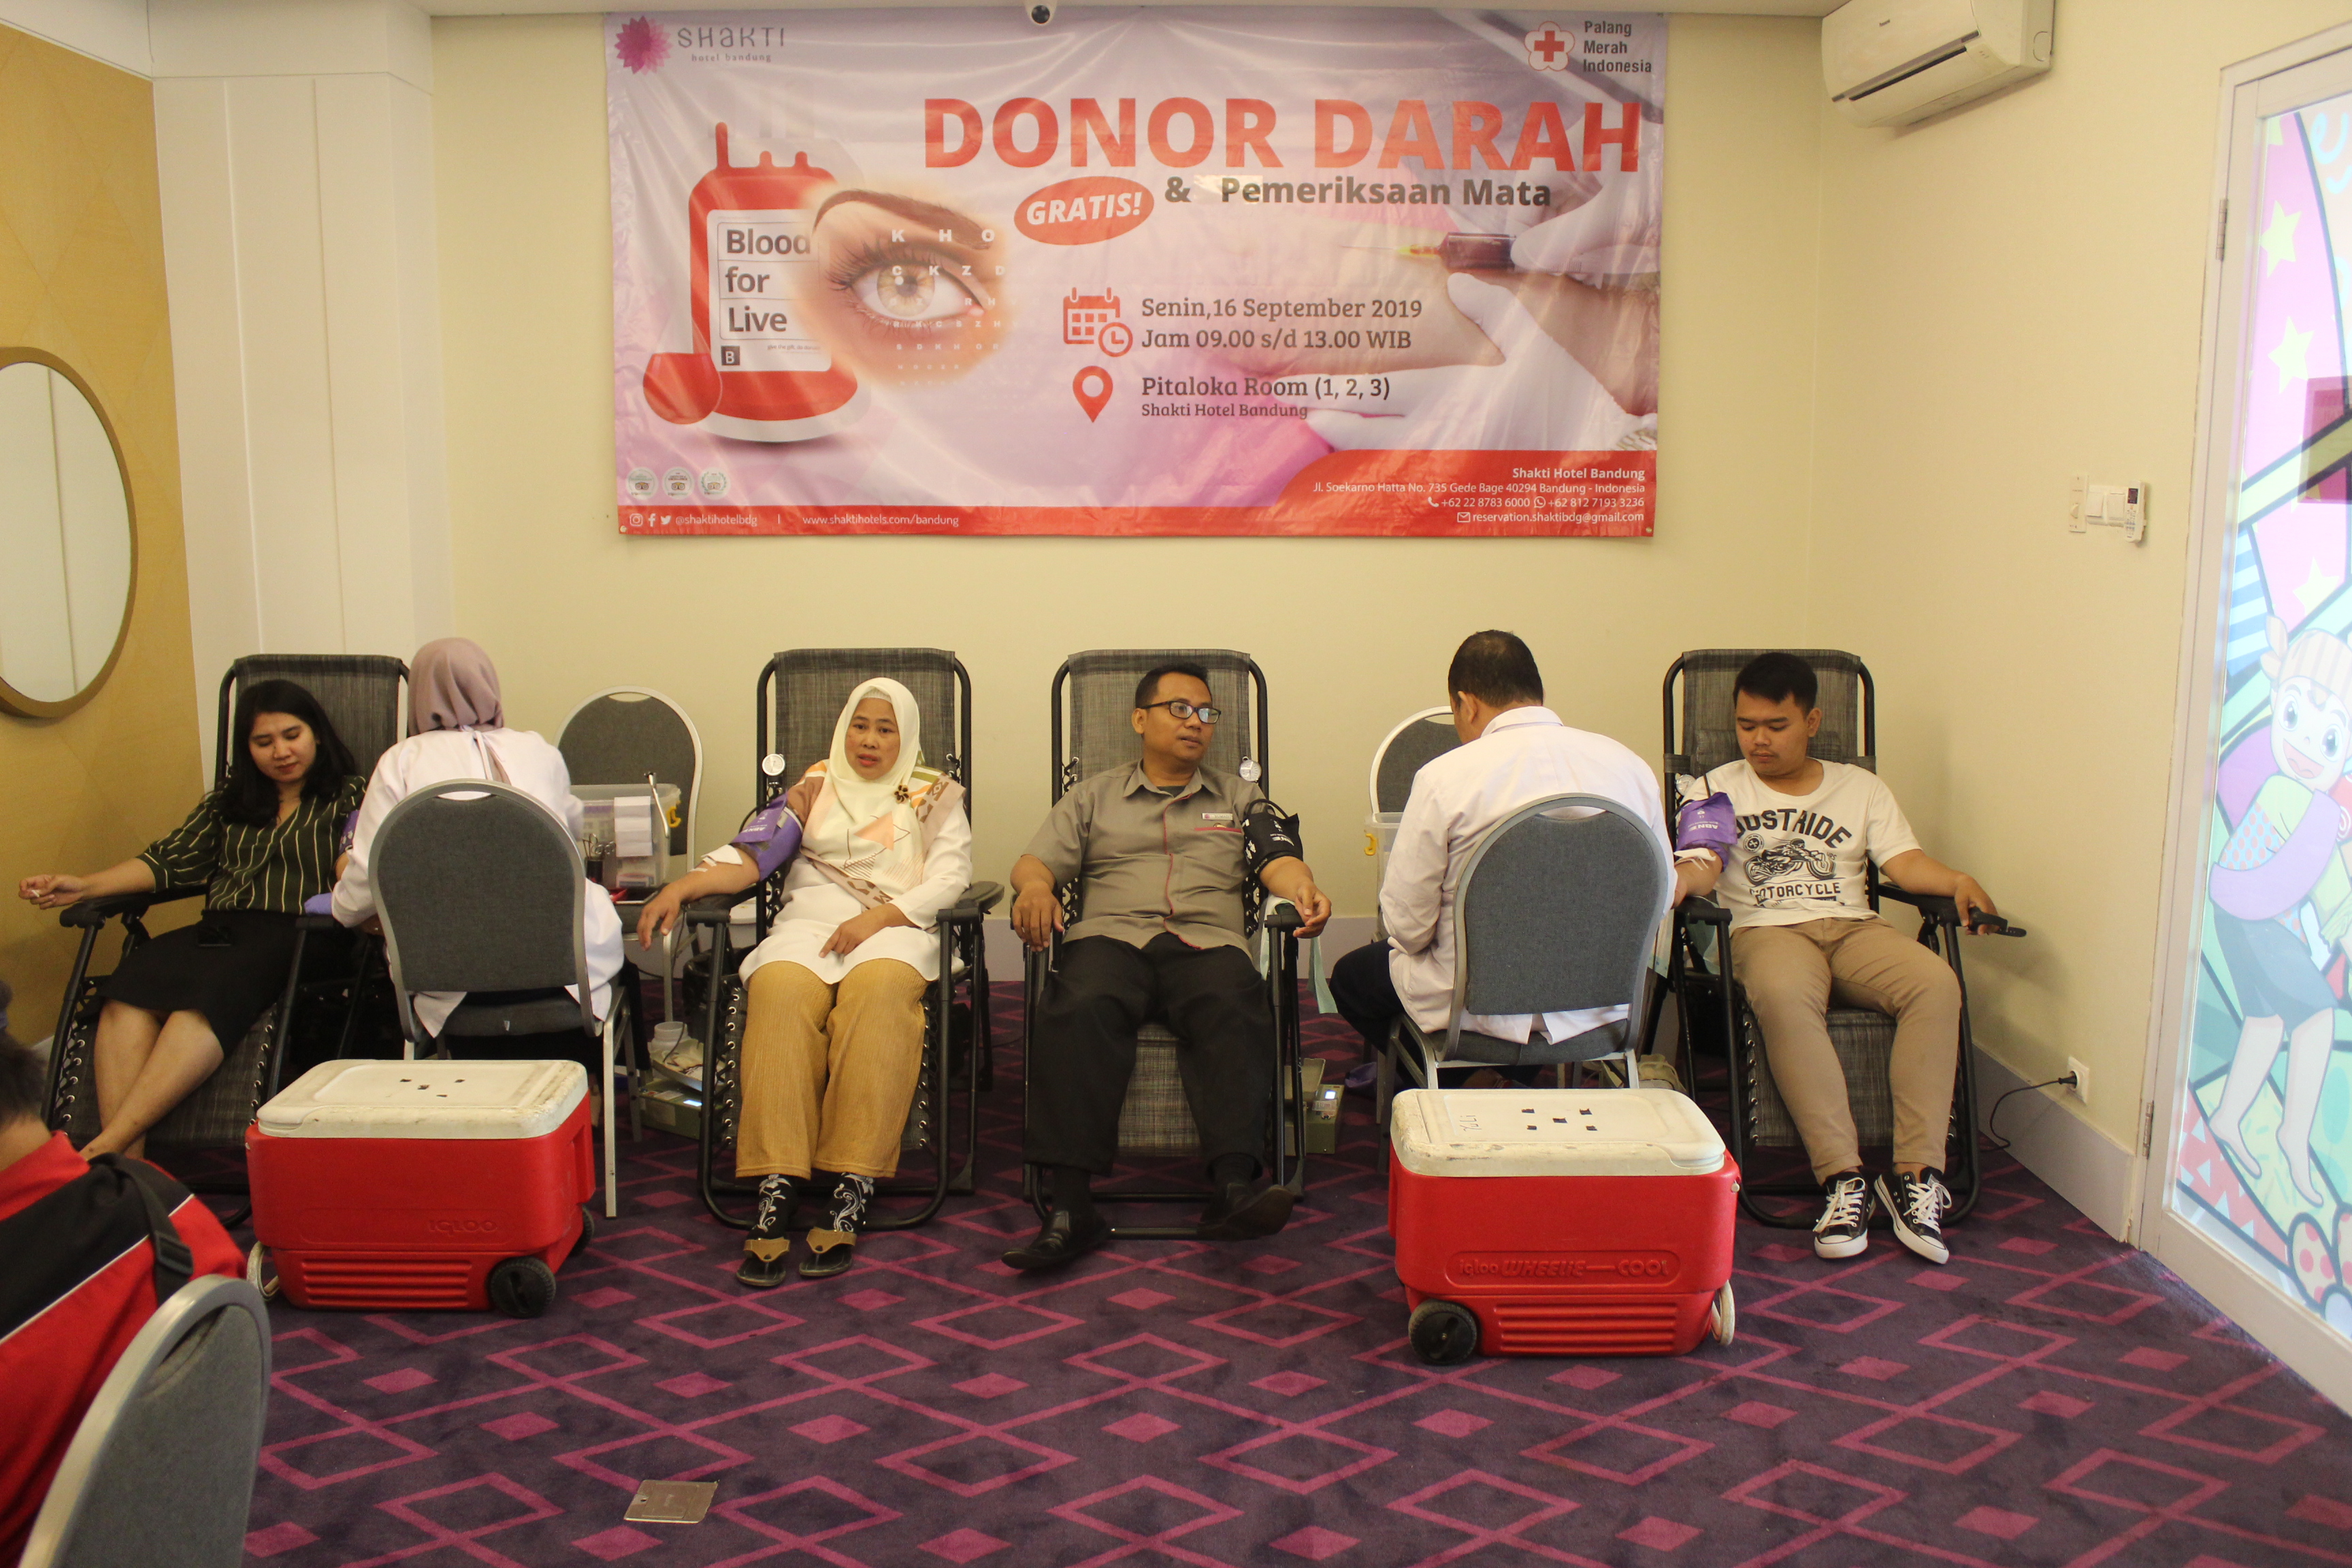 Shakti Hotel Gelar Donor Darah dan Pemeriksaan Mata Gratis